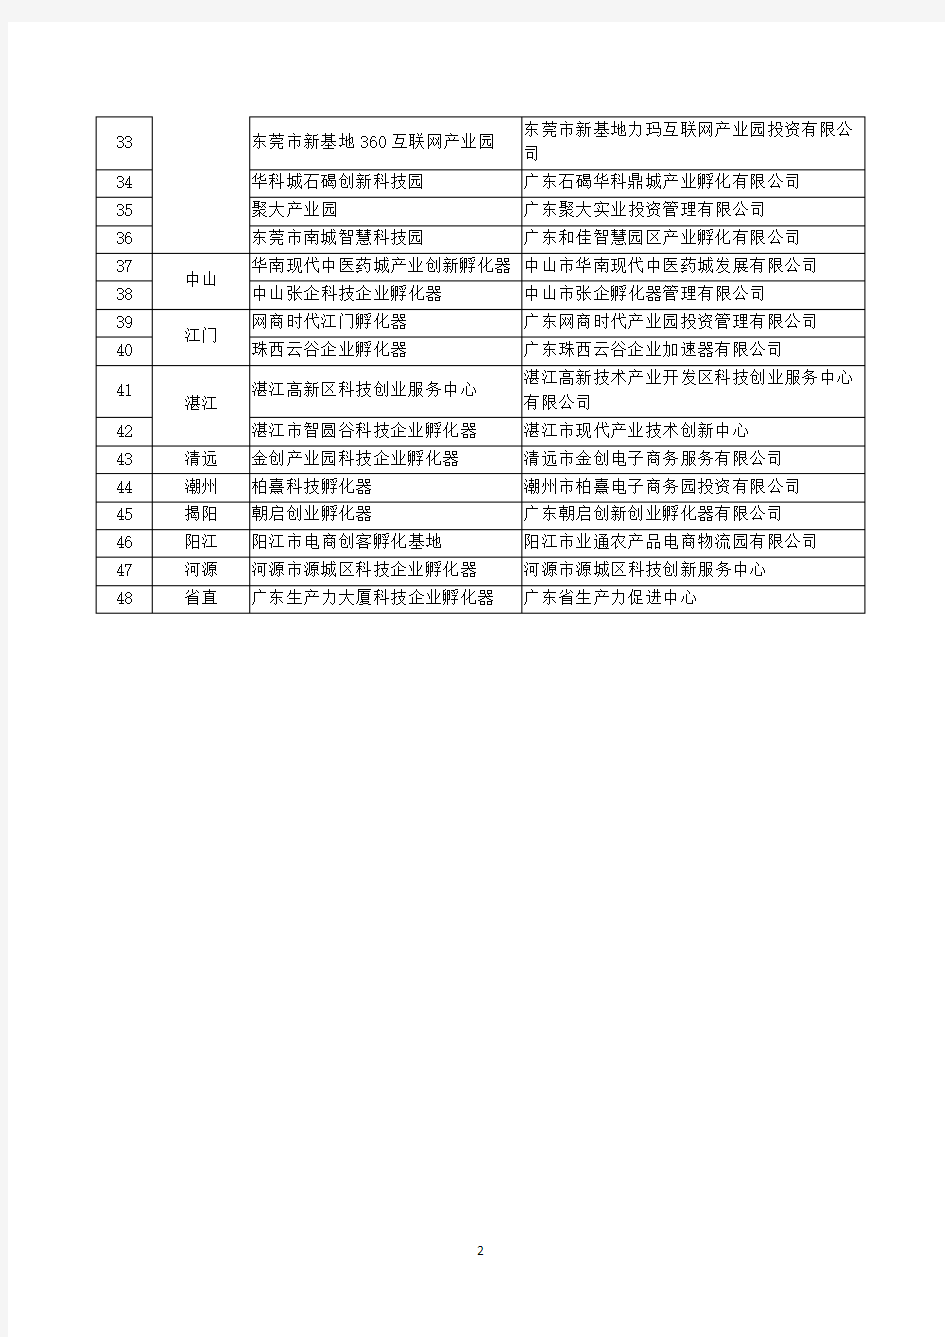 广东省2017年国家级科技企业孵化器培育单位名单